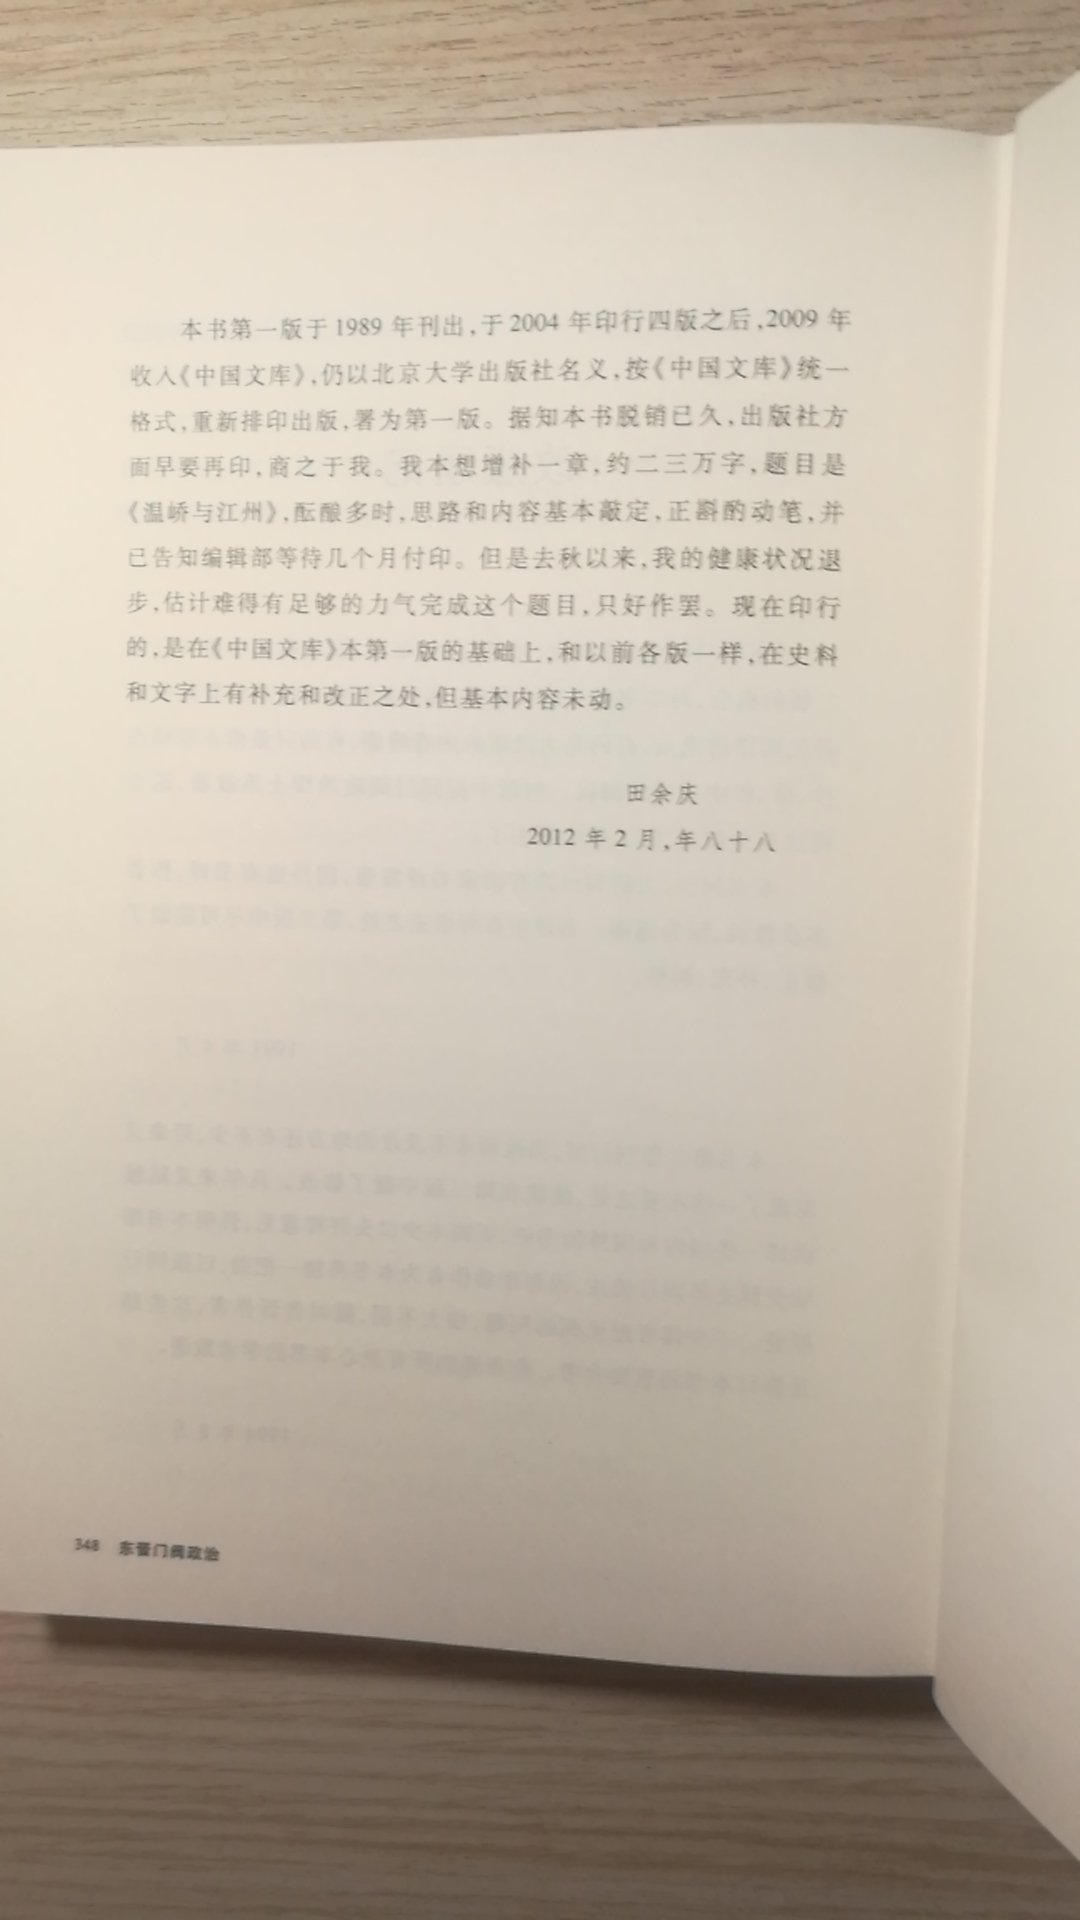 本书是田余庆先生的名著。上世纪80年代出版。到如今已经第5版了。田先生通过细致的考证梳理了东晋那个时期的门阀政治。